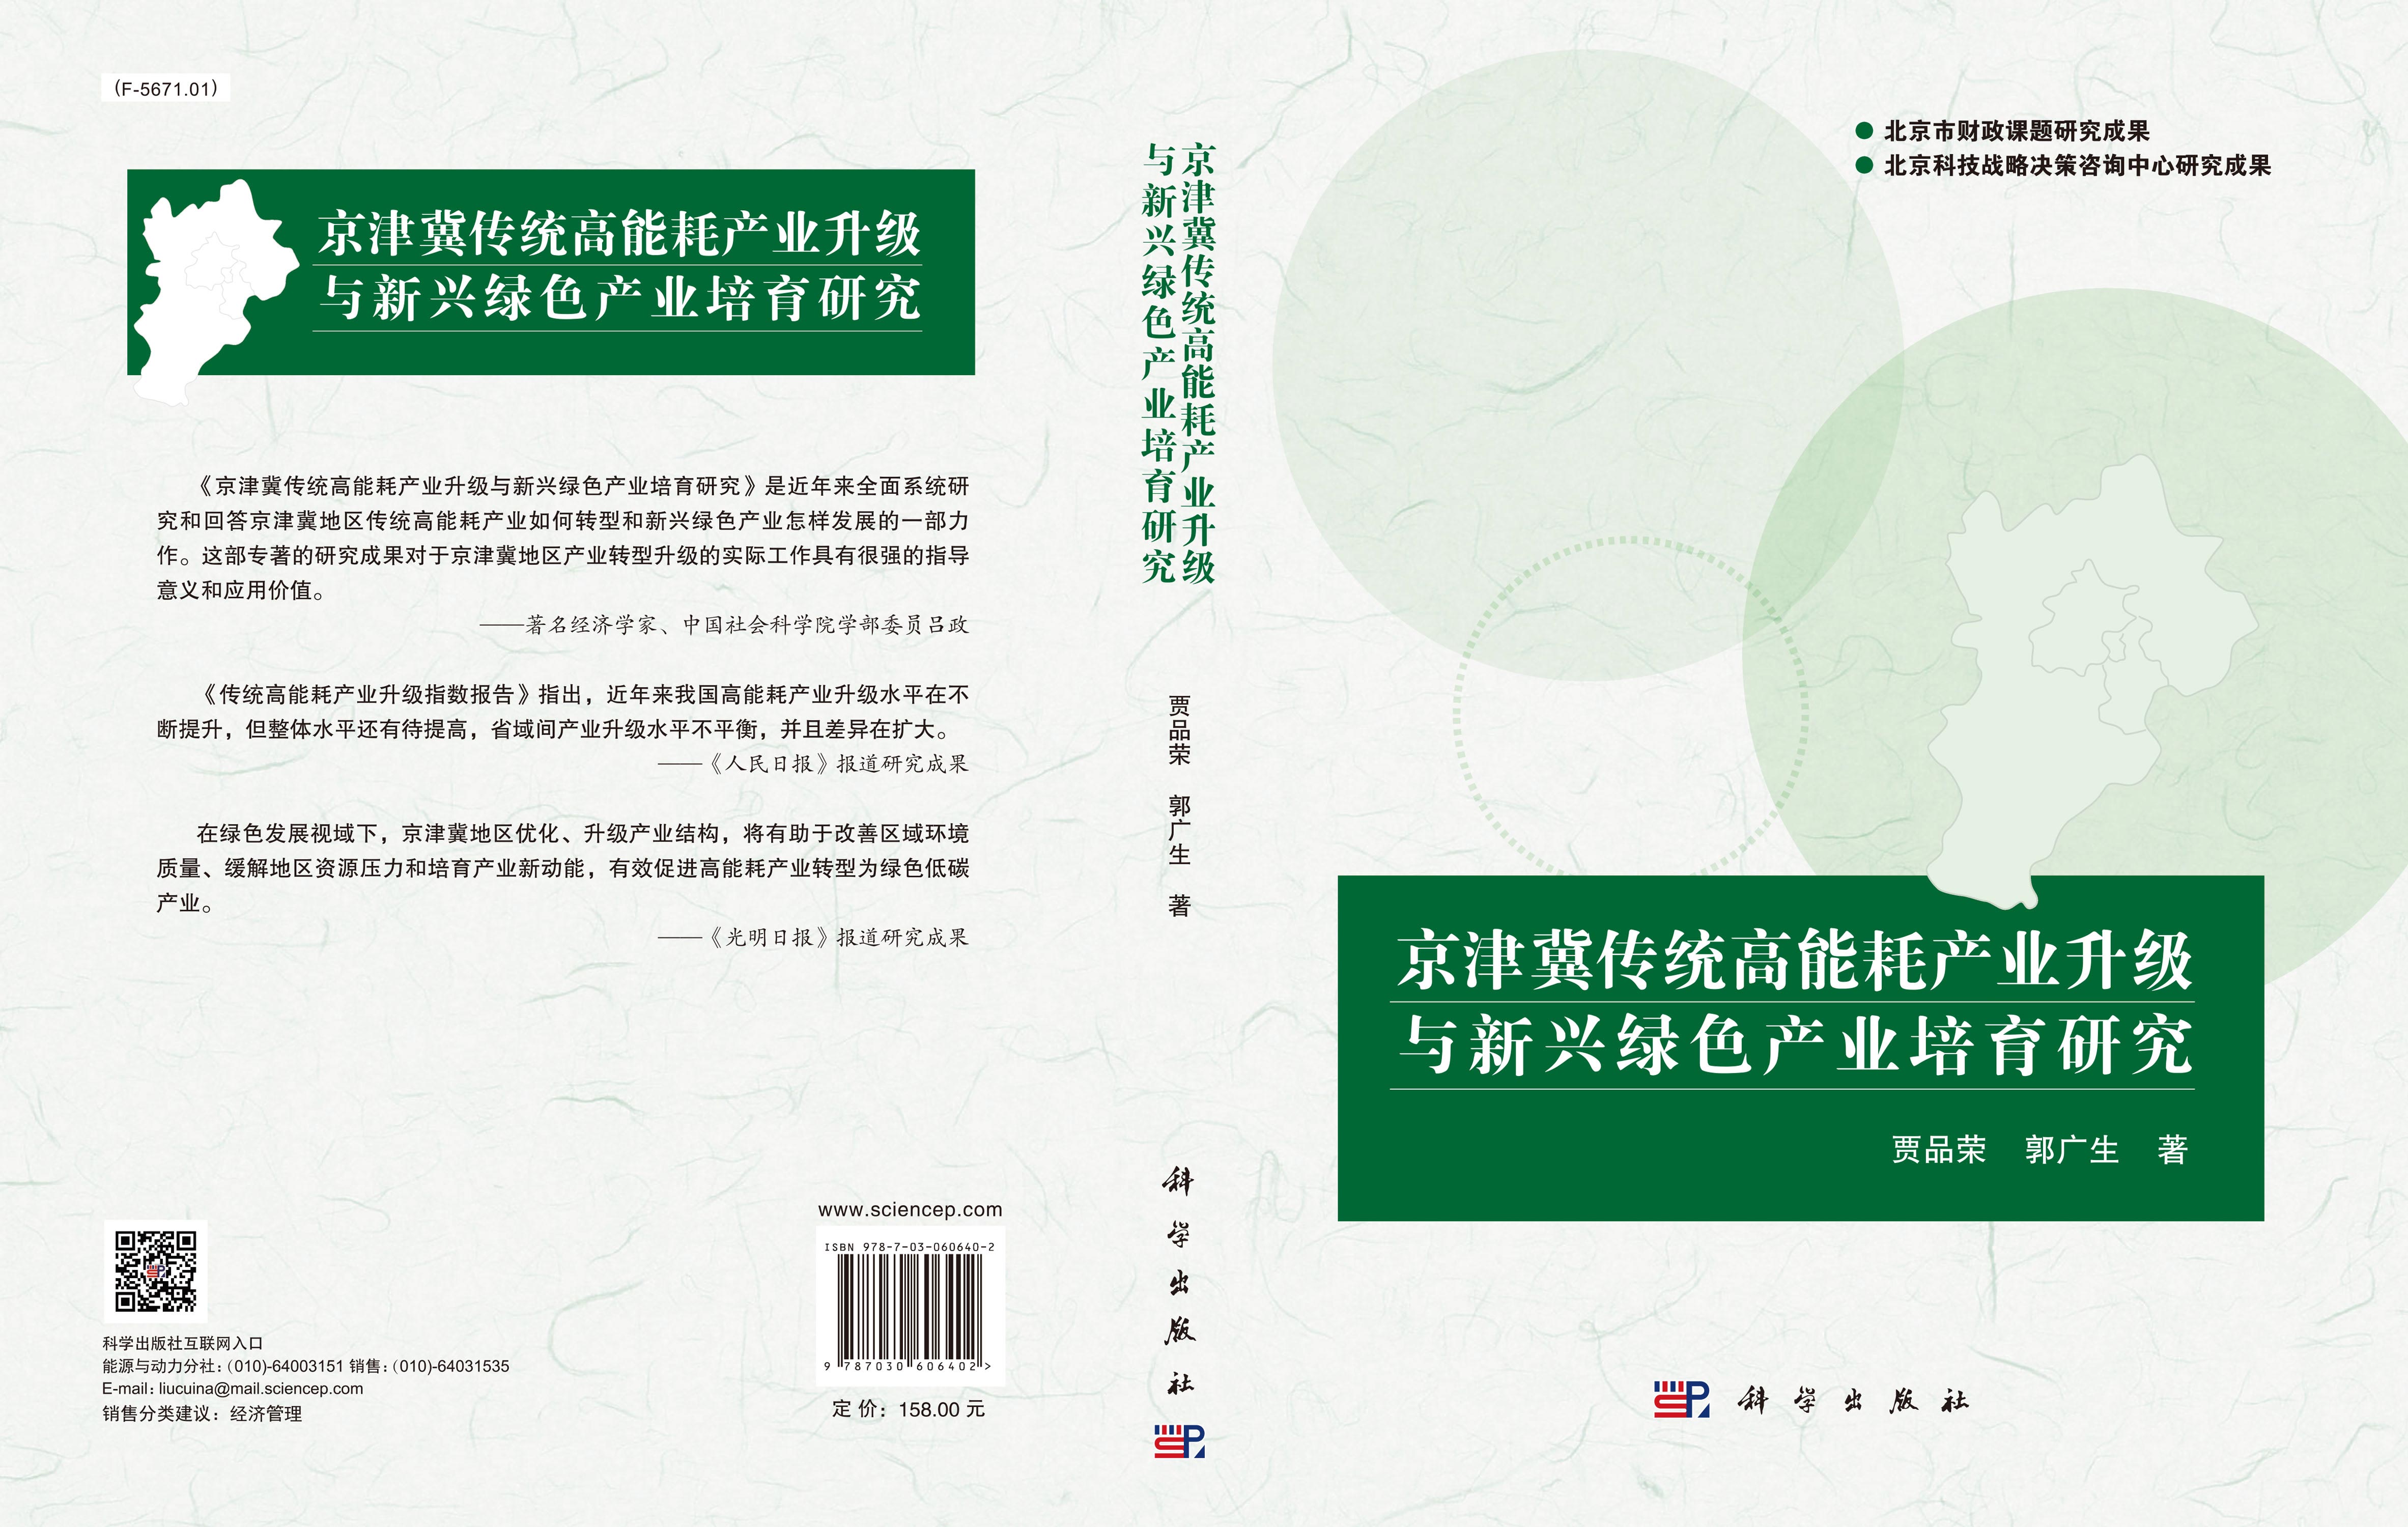 京津冀传统高能耗产业升级与新兴绿色产业培育研究